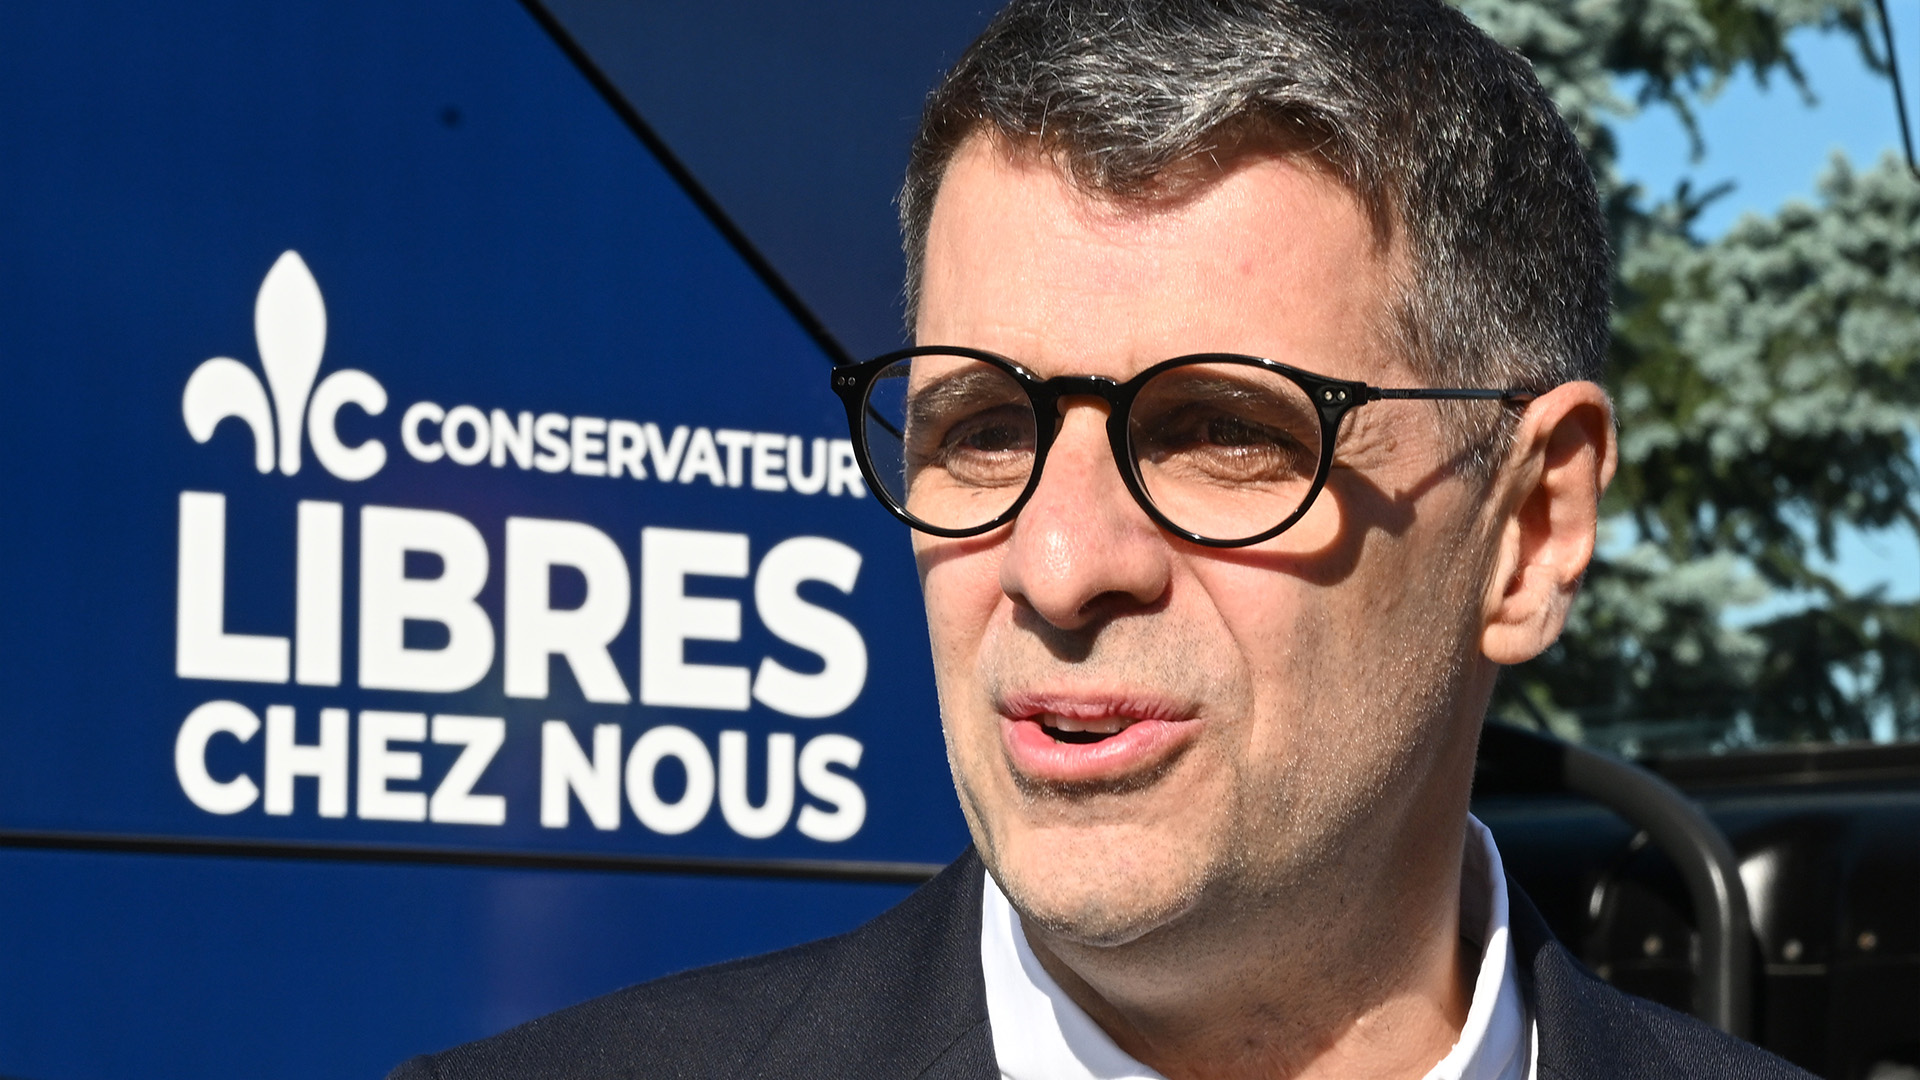 Le chef conservateur du Québec, Eric Duhaime, discute avec des candidats devant son autobus de campagne, le samedi 17 septembre 2022 à Lévis, au Québec.